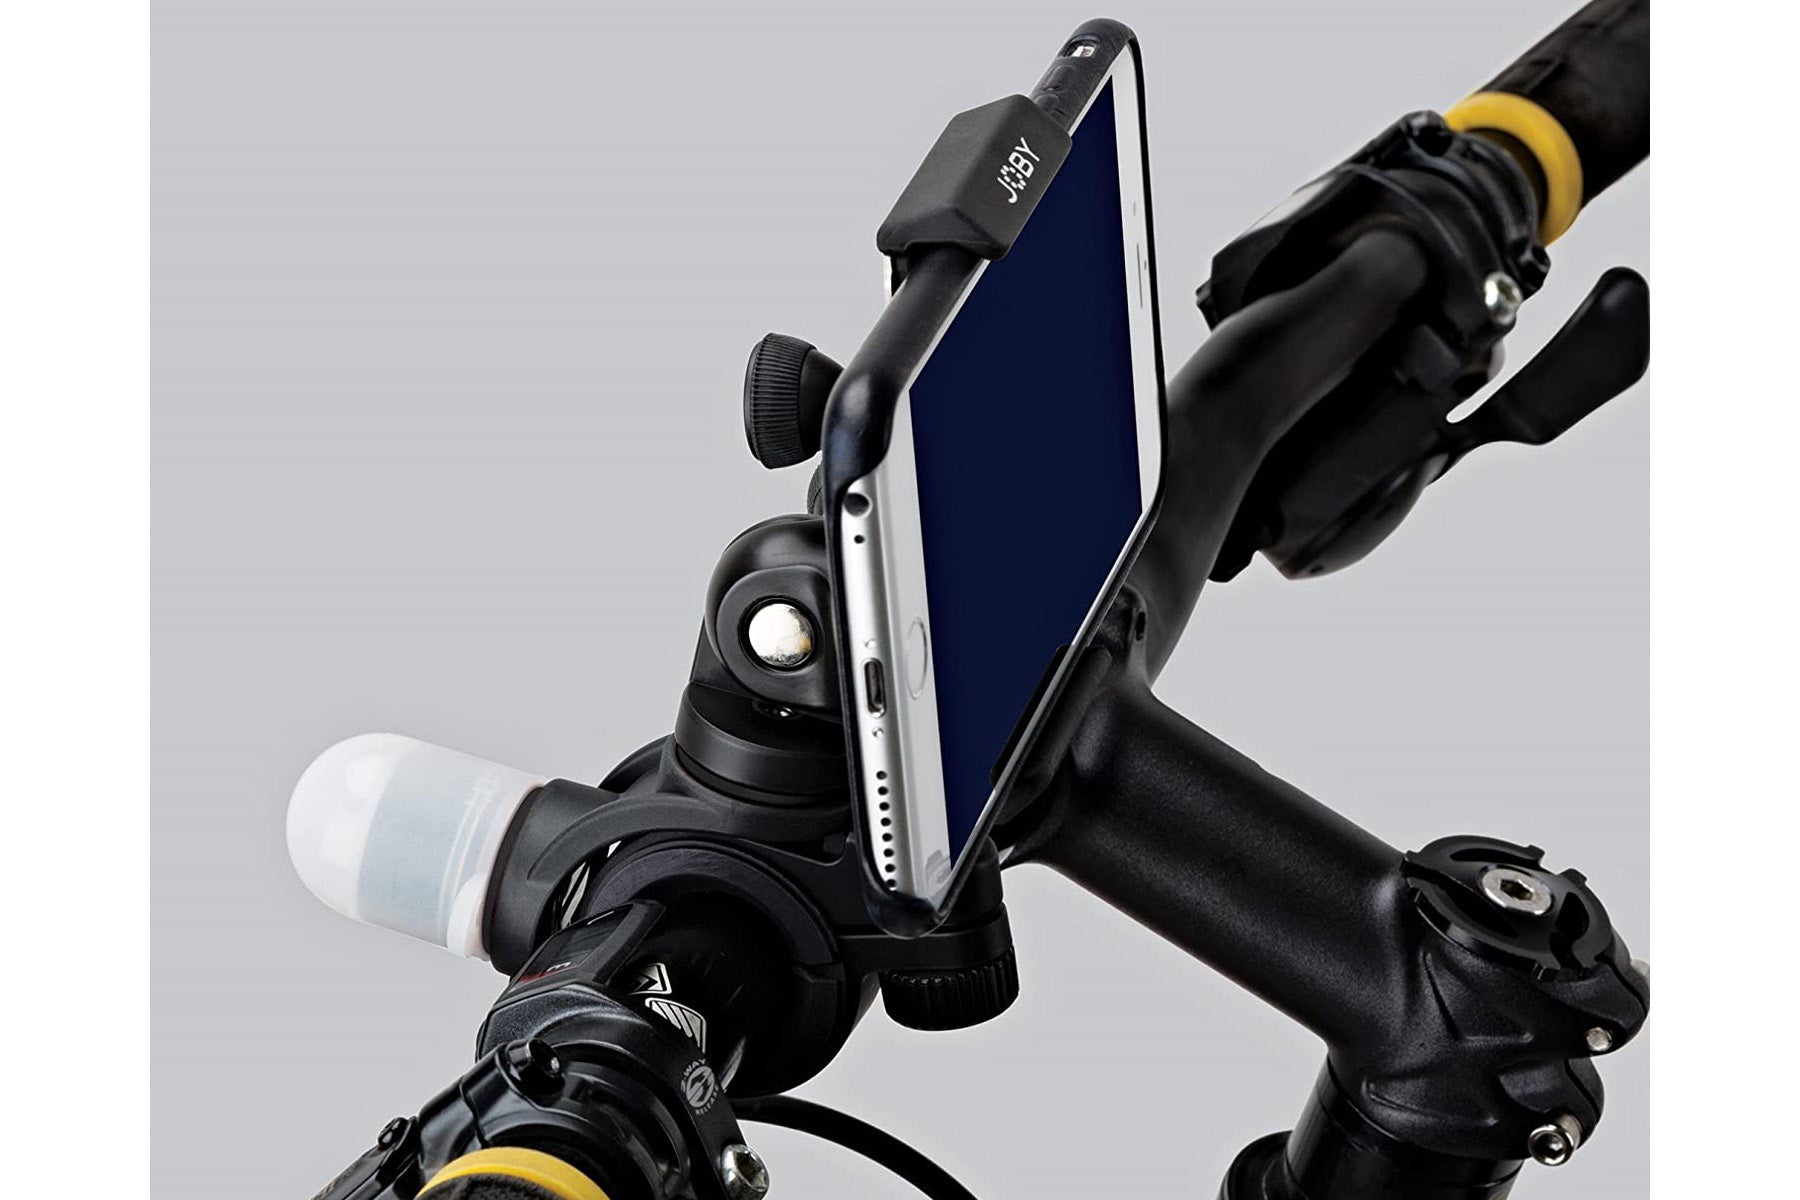 Joby GripTight Bike Mount PRO Phone Holder + Red & White Visibilty LED Light Pack - maplin.co.uk